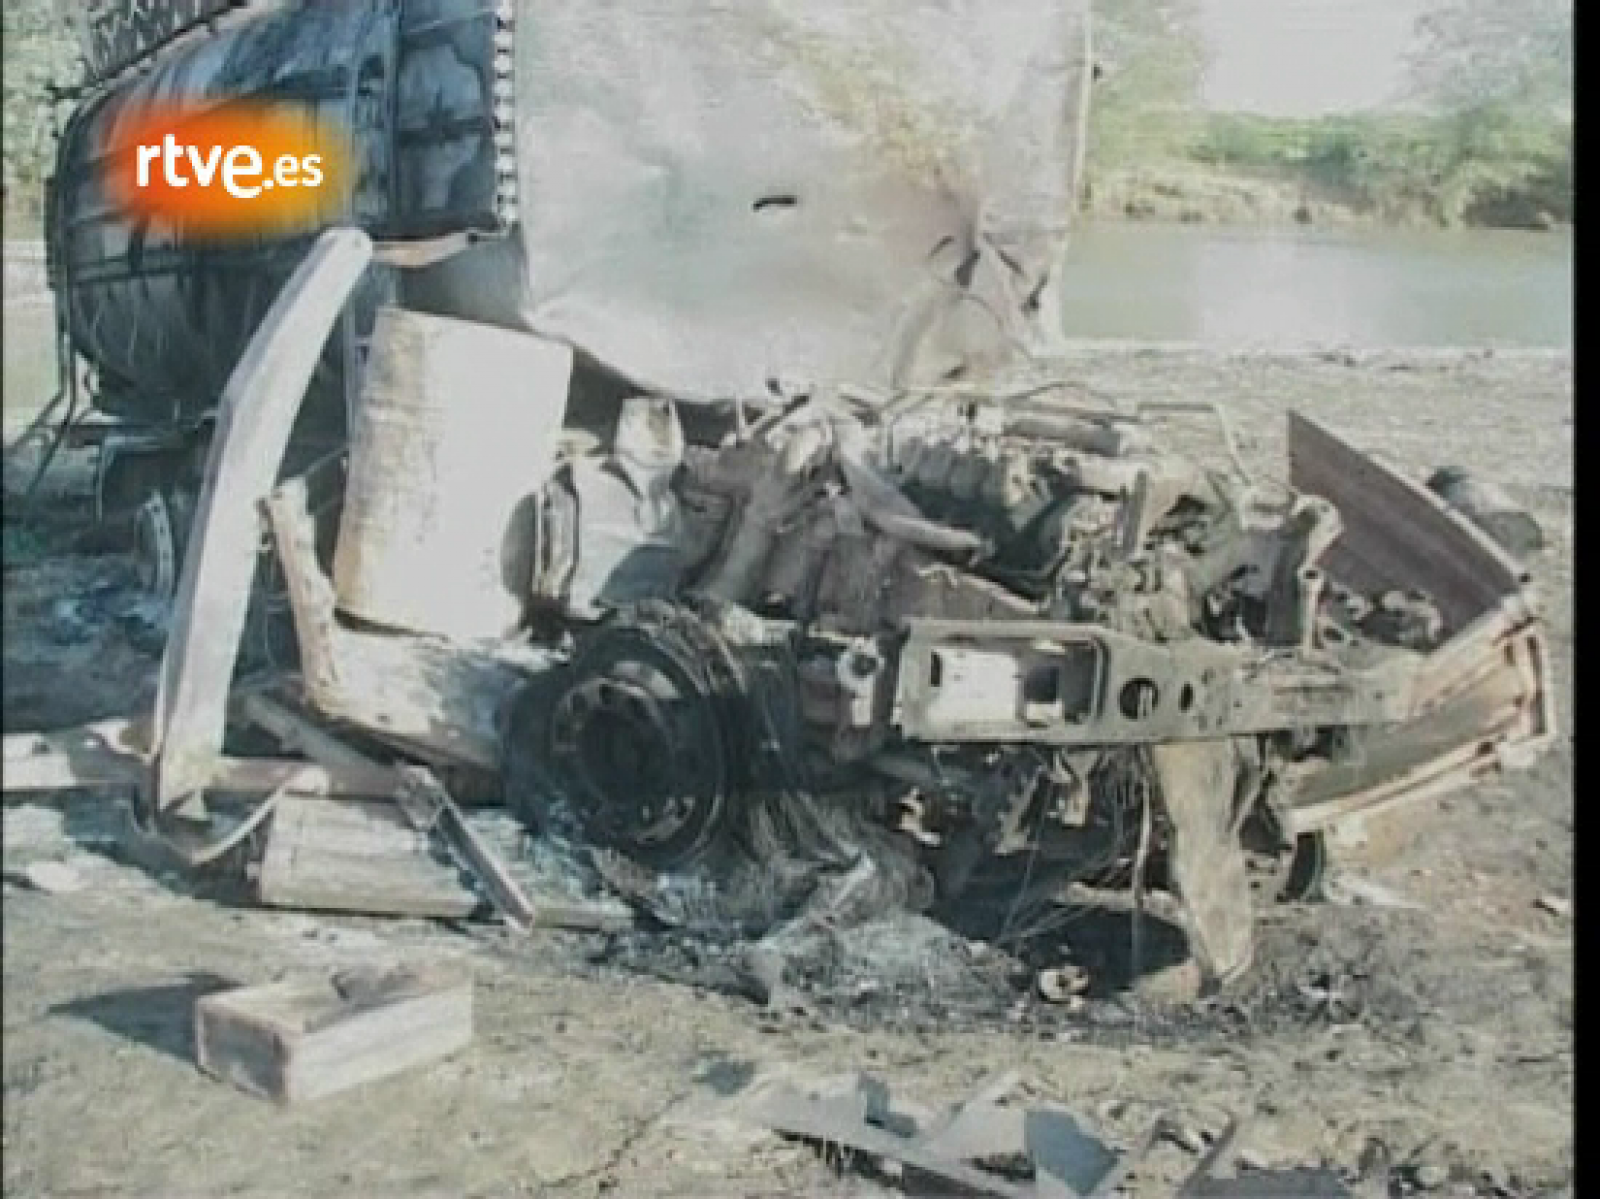 El vídeo muestra dos vehículos pick-up supuestamente ocupados por insurgentes que se alejan del río Kunduz y la explosión de las bombas lanzadas por un bombardero estadounidense que destruye dos camiones cisterna robados por fuerzas talibán.